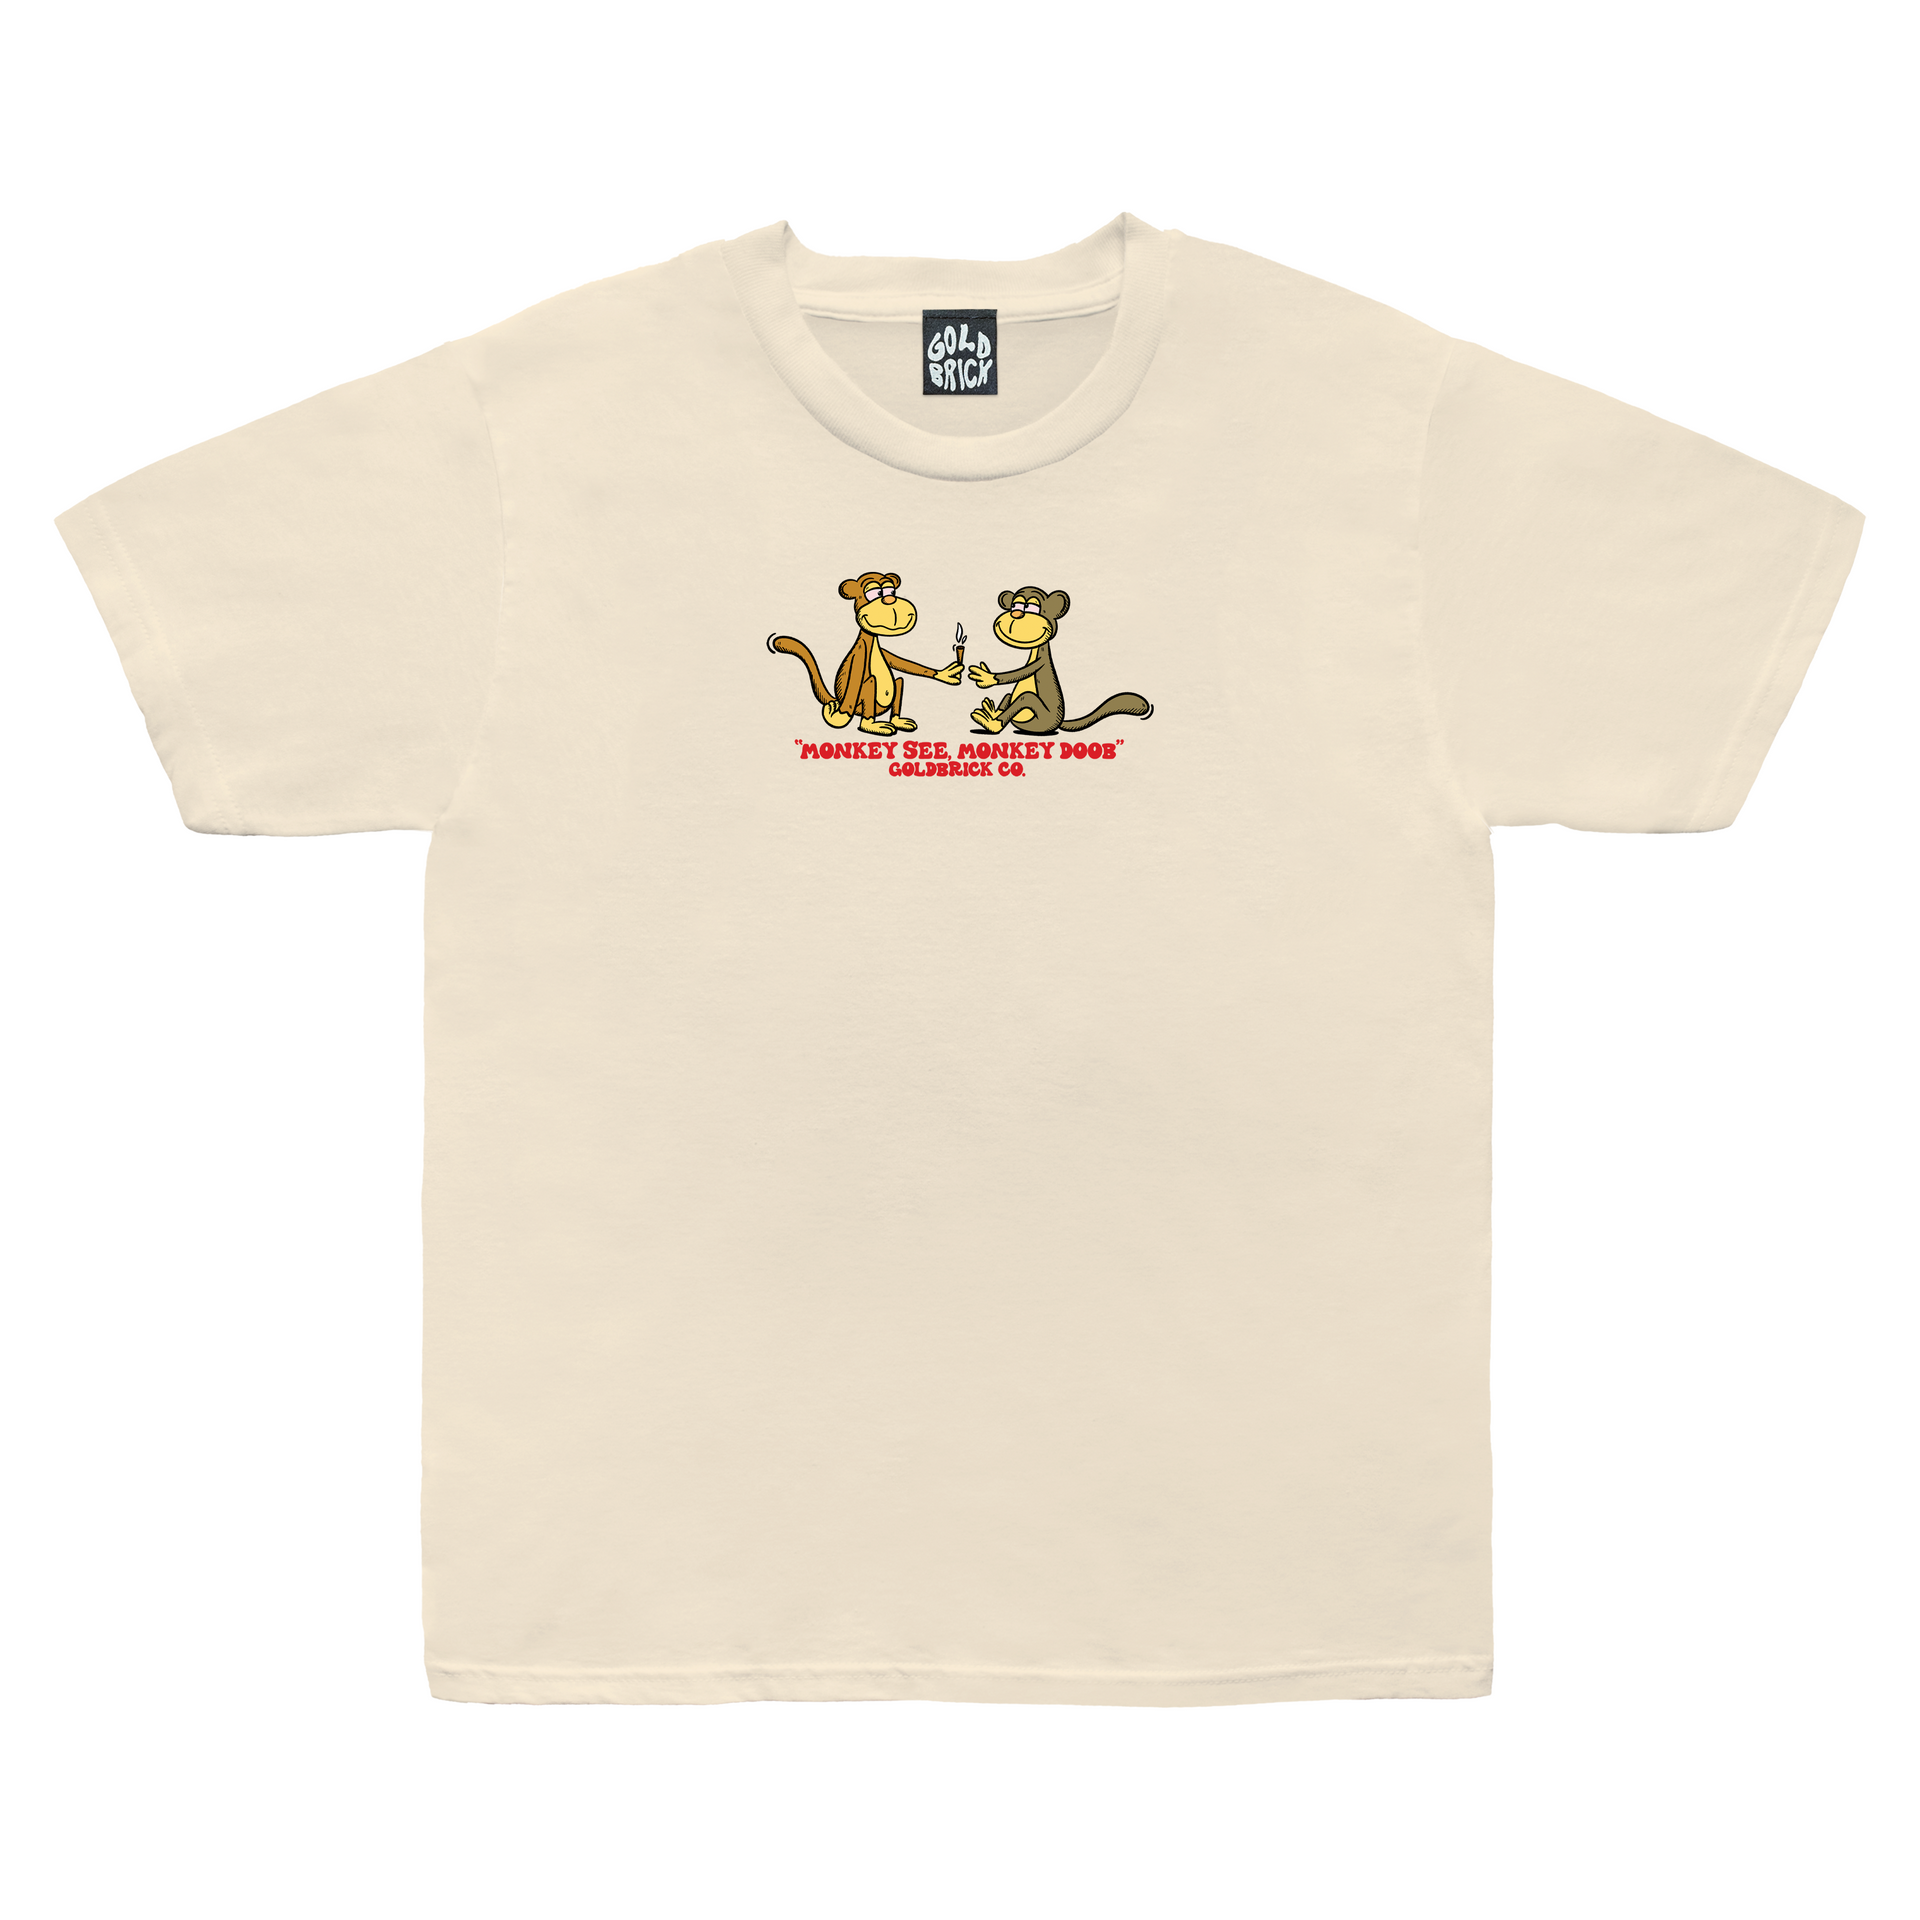 Monkey See, Monkey Doob T-Shirt – Goldbrick Co.